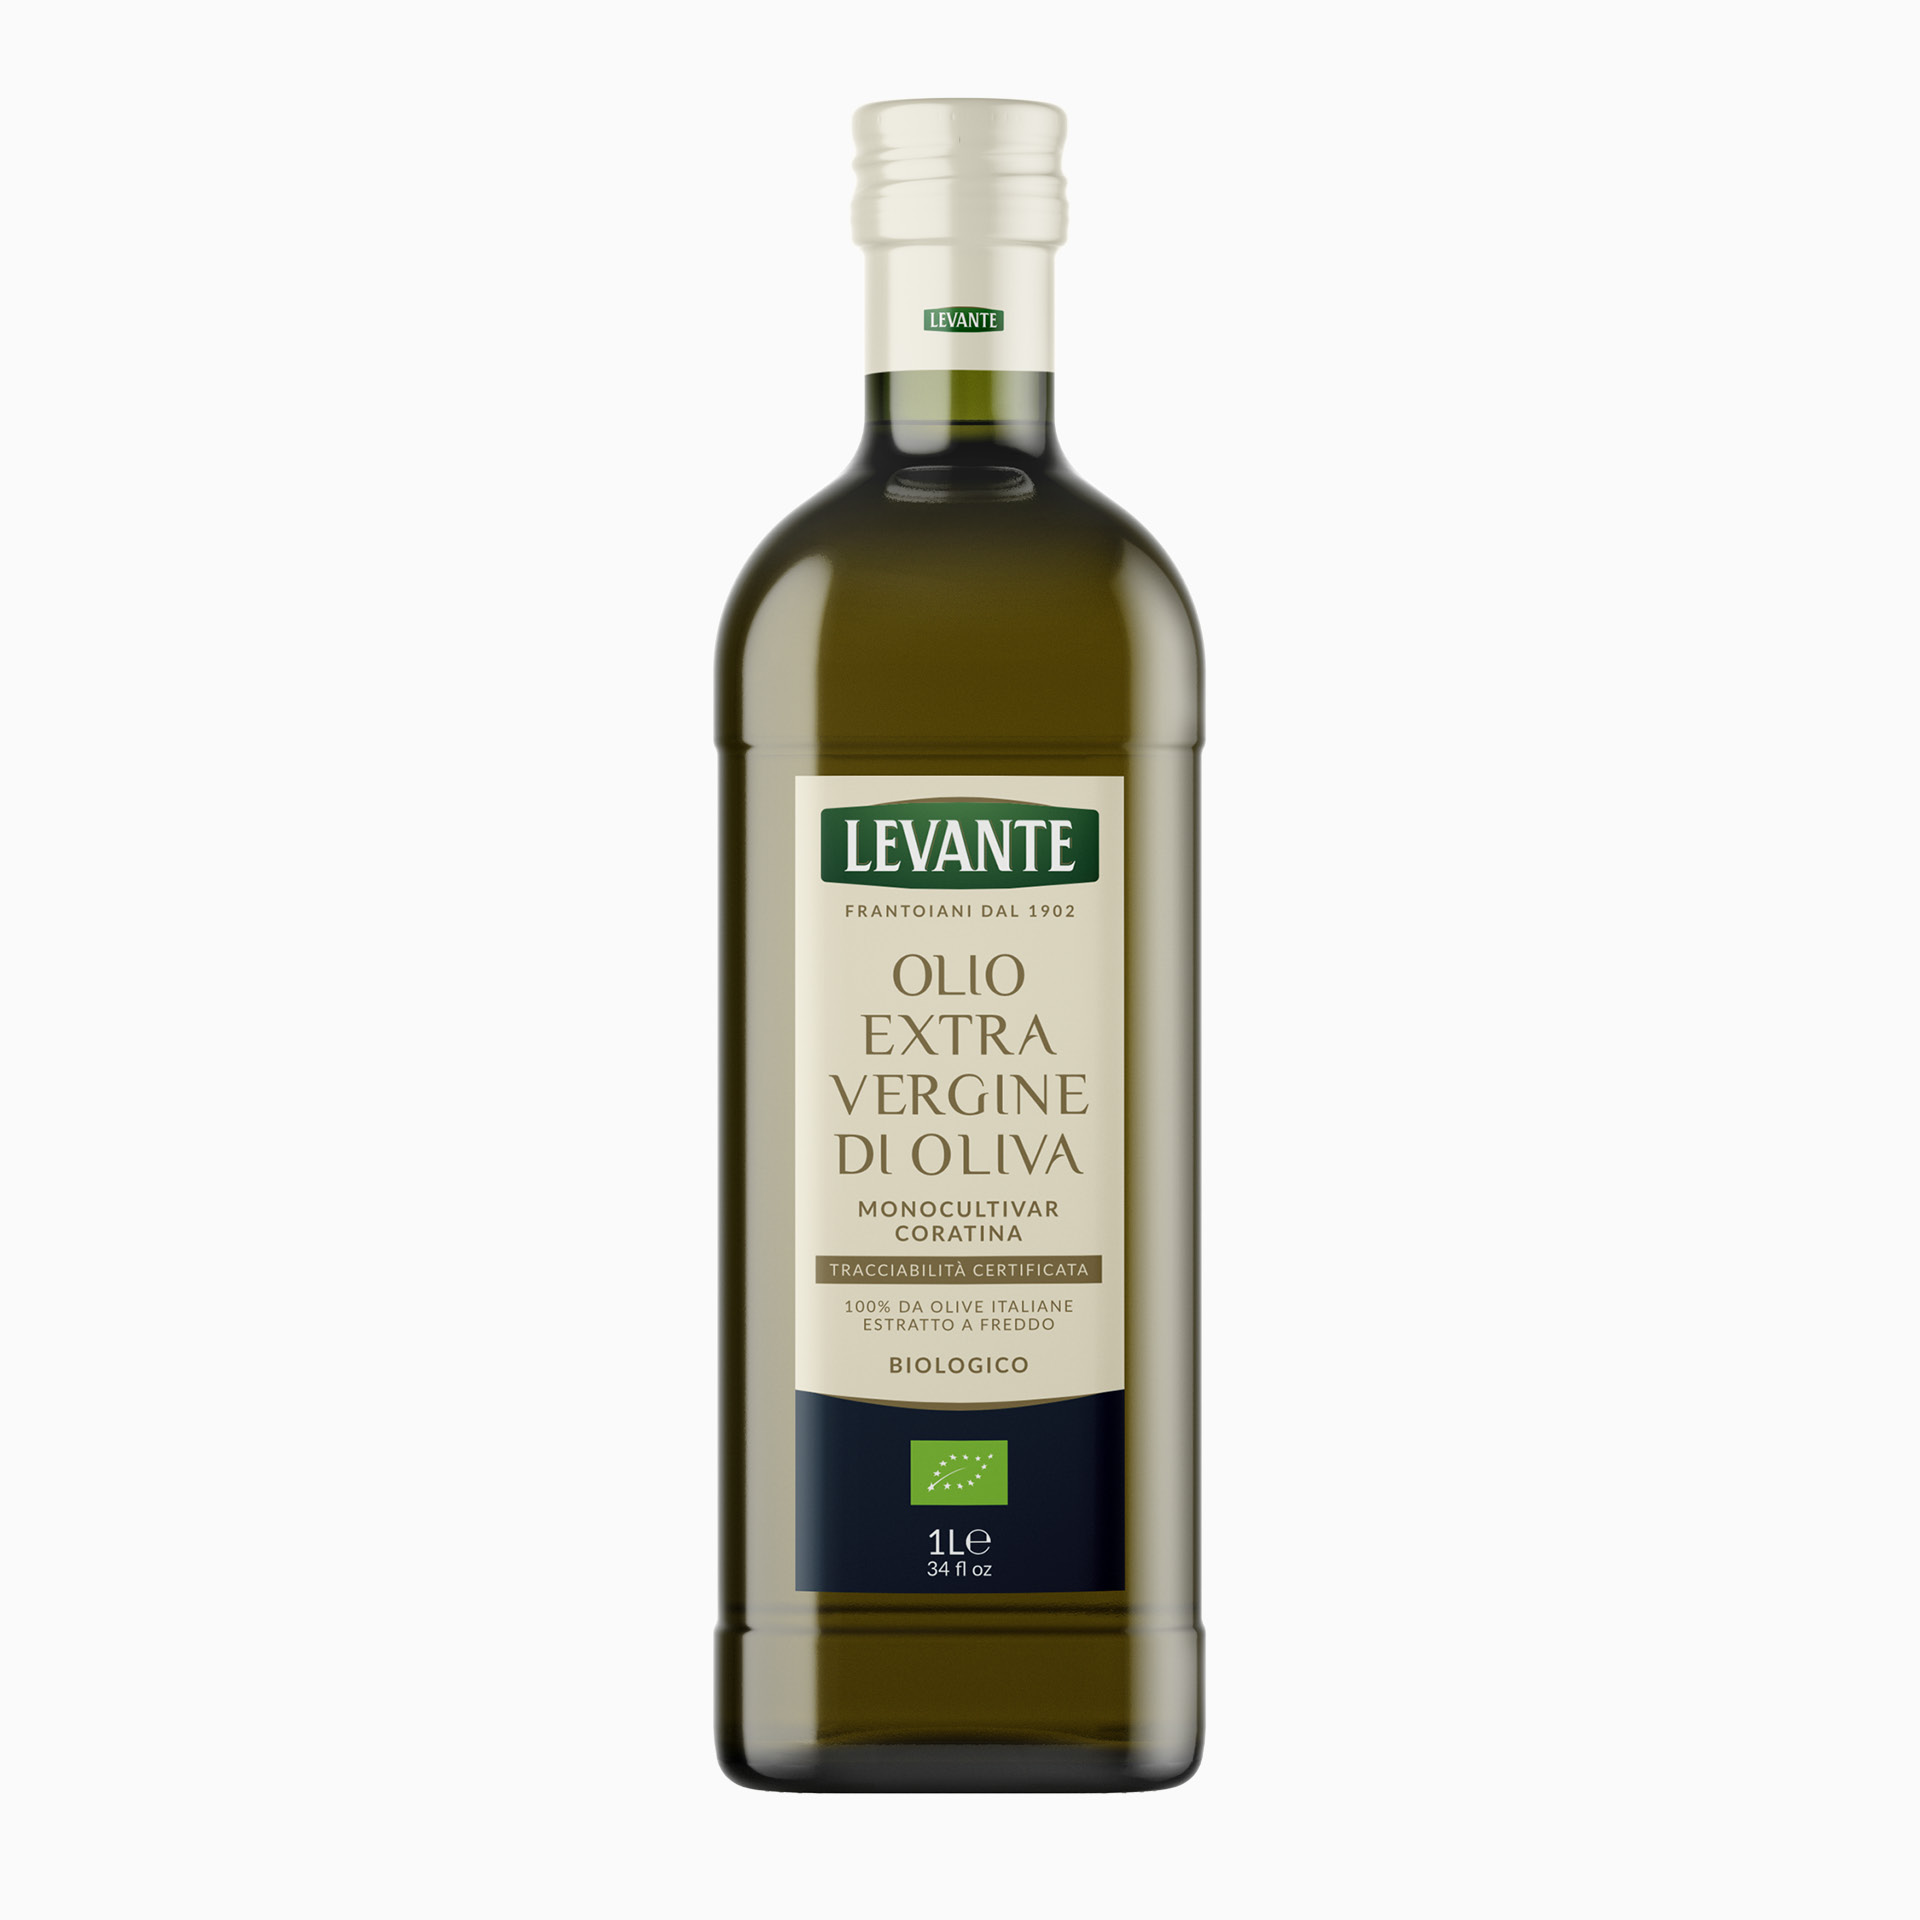 100% Italian Organic “Tracciabilità Certificata”